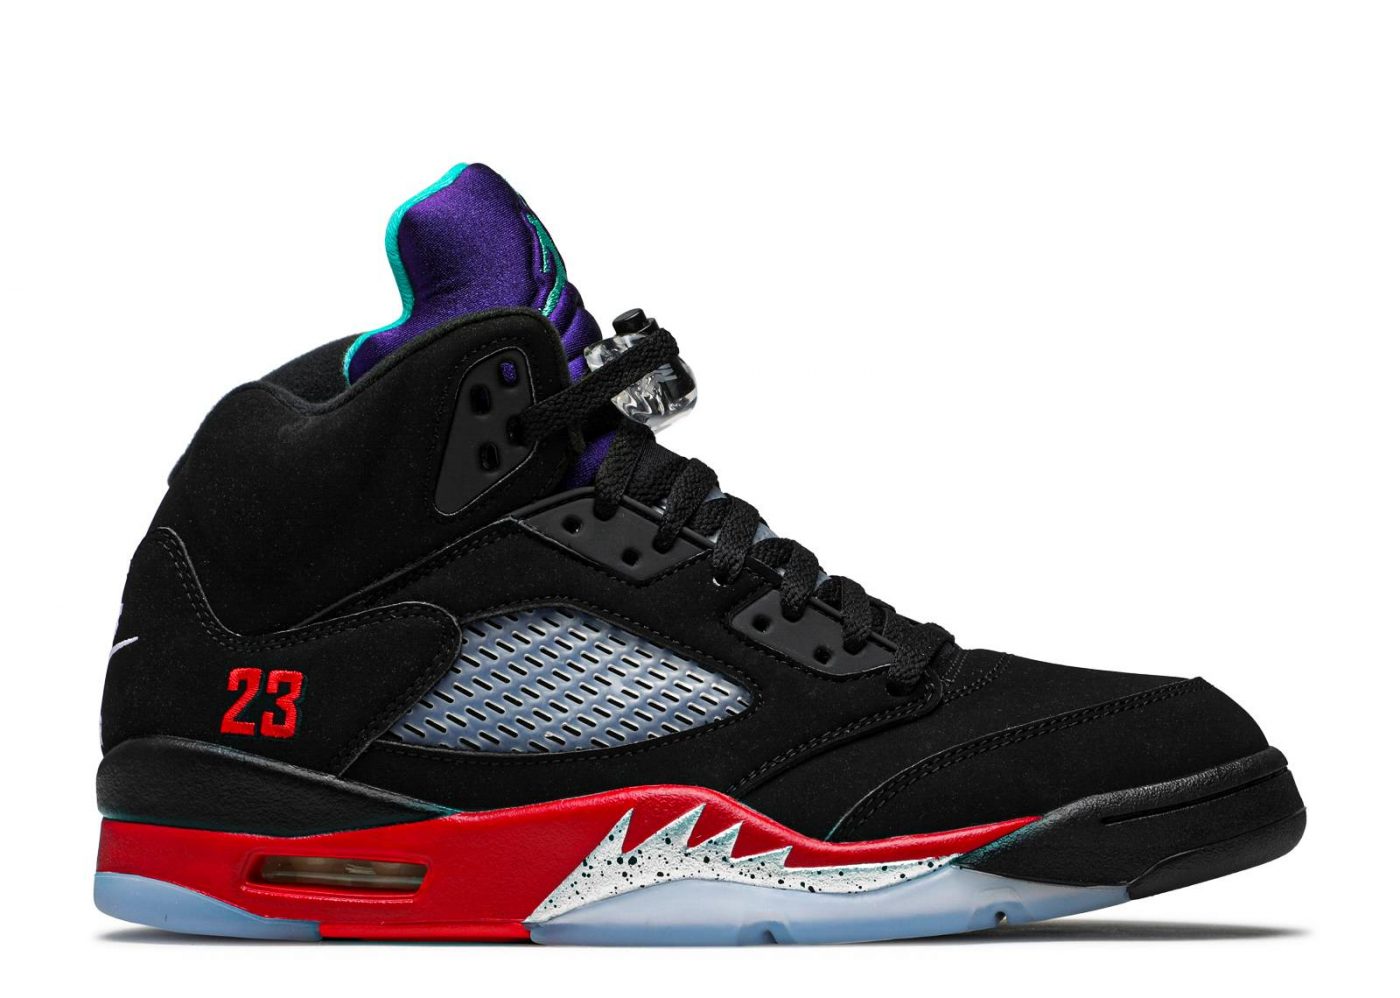 Nike Air Jordan 5 Retro Top 3